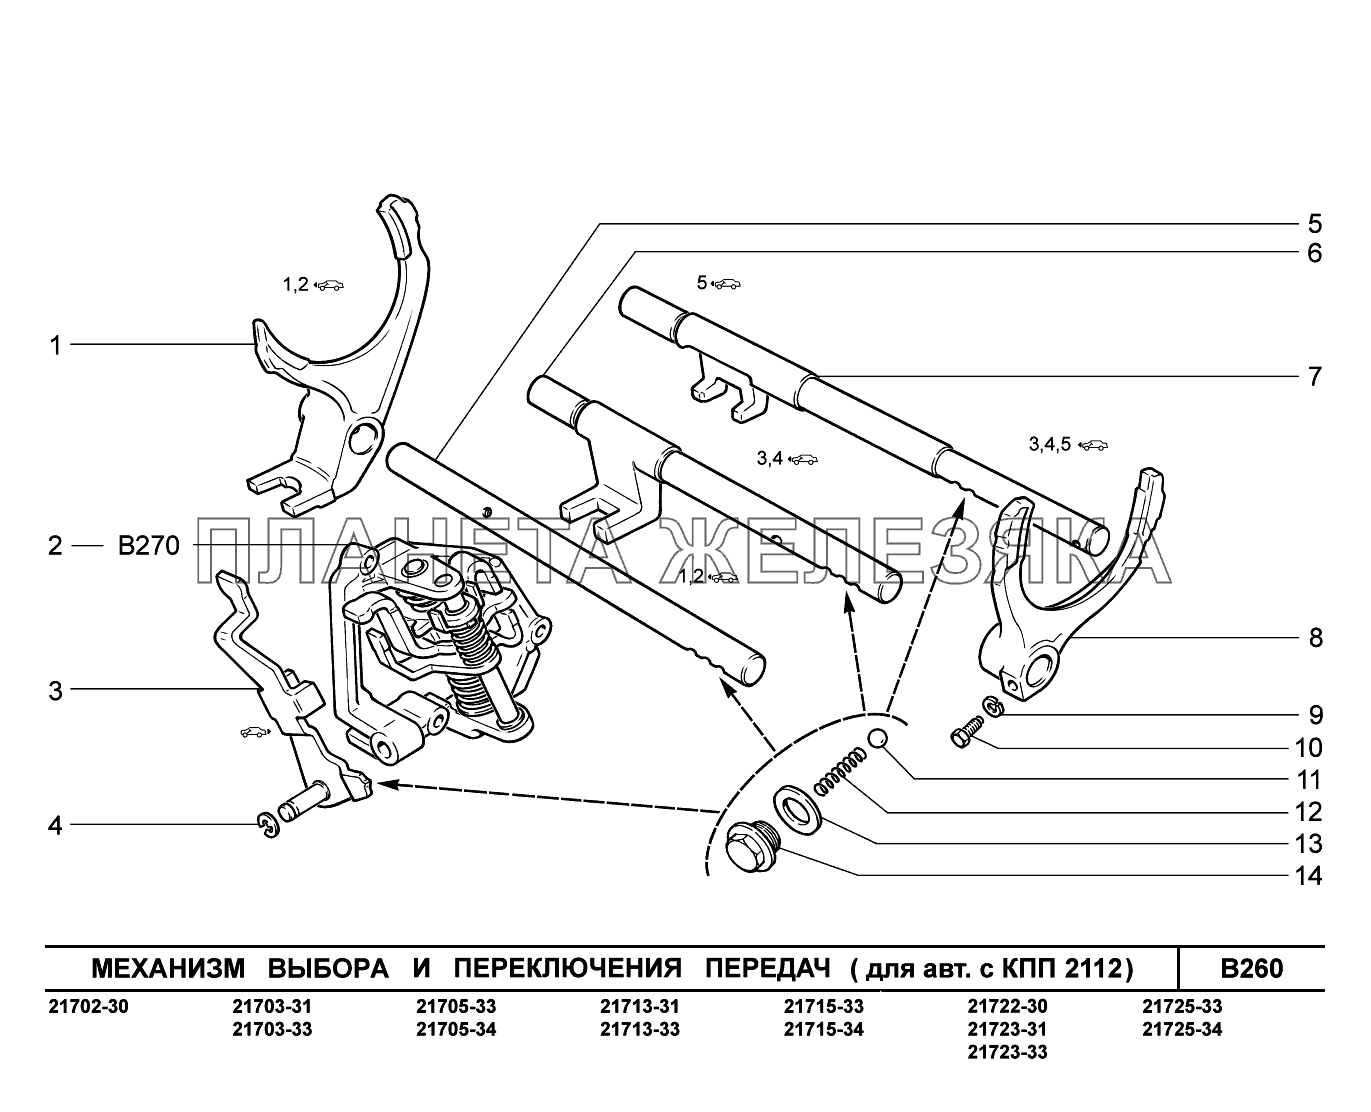 B260. Механизм выбора и переключения передач ВАЗ-2170 